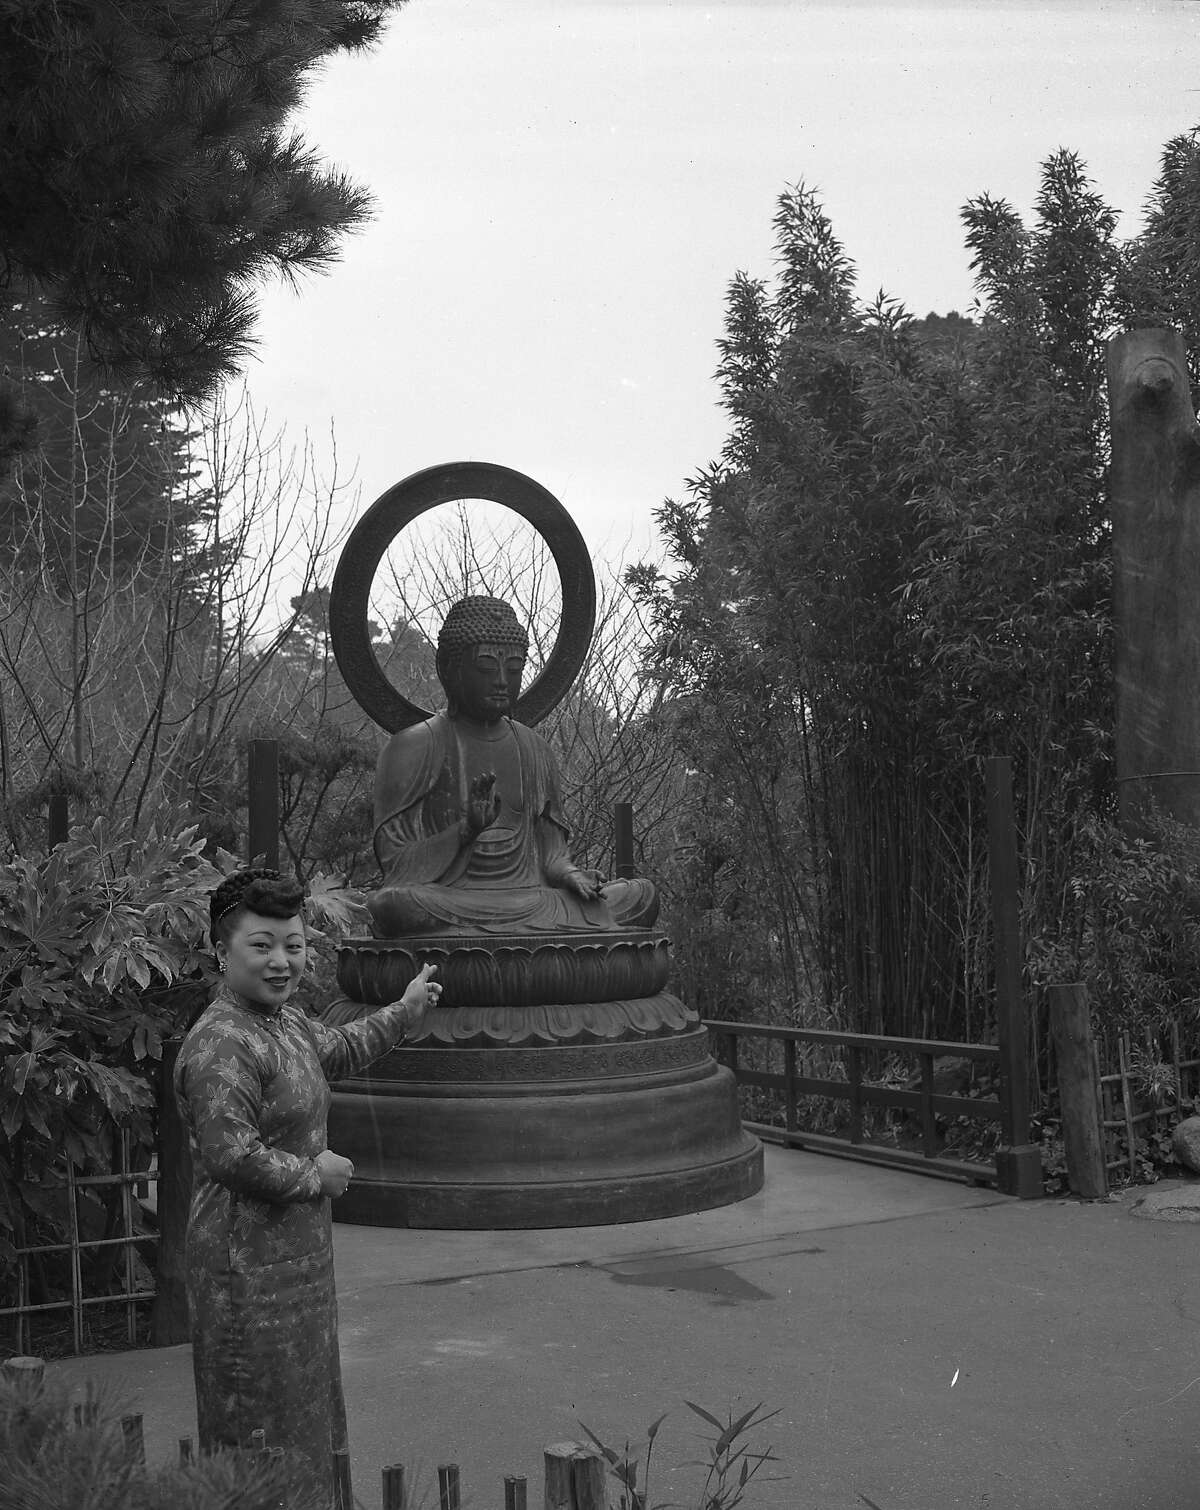 1949年3月，金门公园日本茶园的佛像被安装。这是阿甘一家送给他的礼物，在他们的店里已经存放了15年。底片上显示这个女人叫埃德娜·李照片日期是1949年2月3日